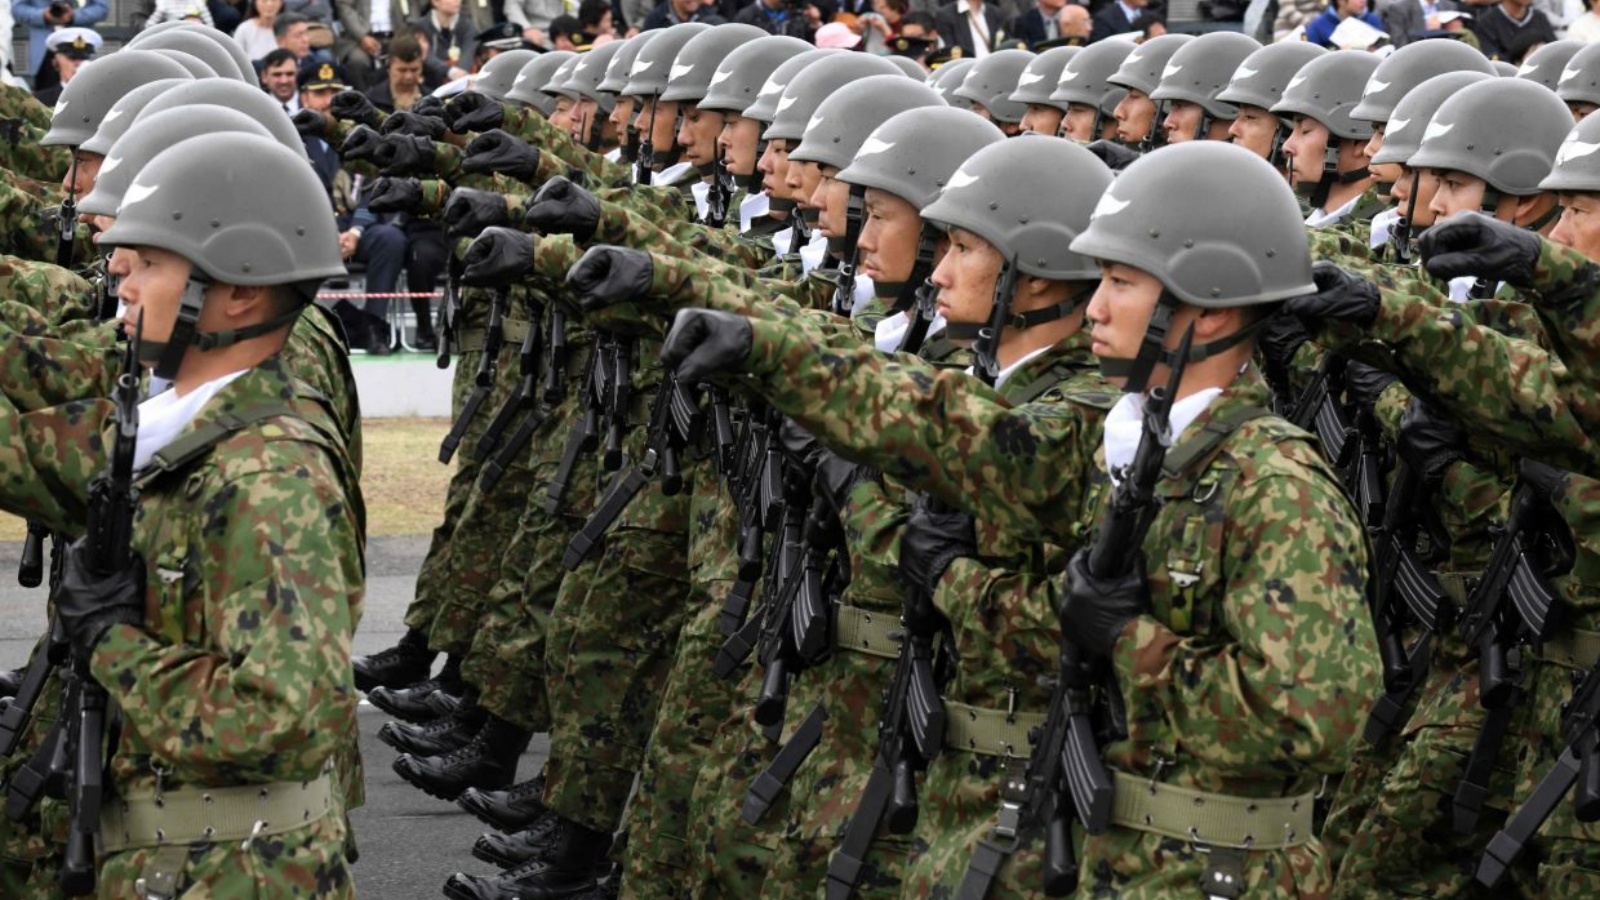 ستحدث الاستراتيجية الأمنية اليابانية تغييراً جوهرياً في البيئة الأمنية لشرق آسيا